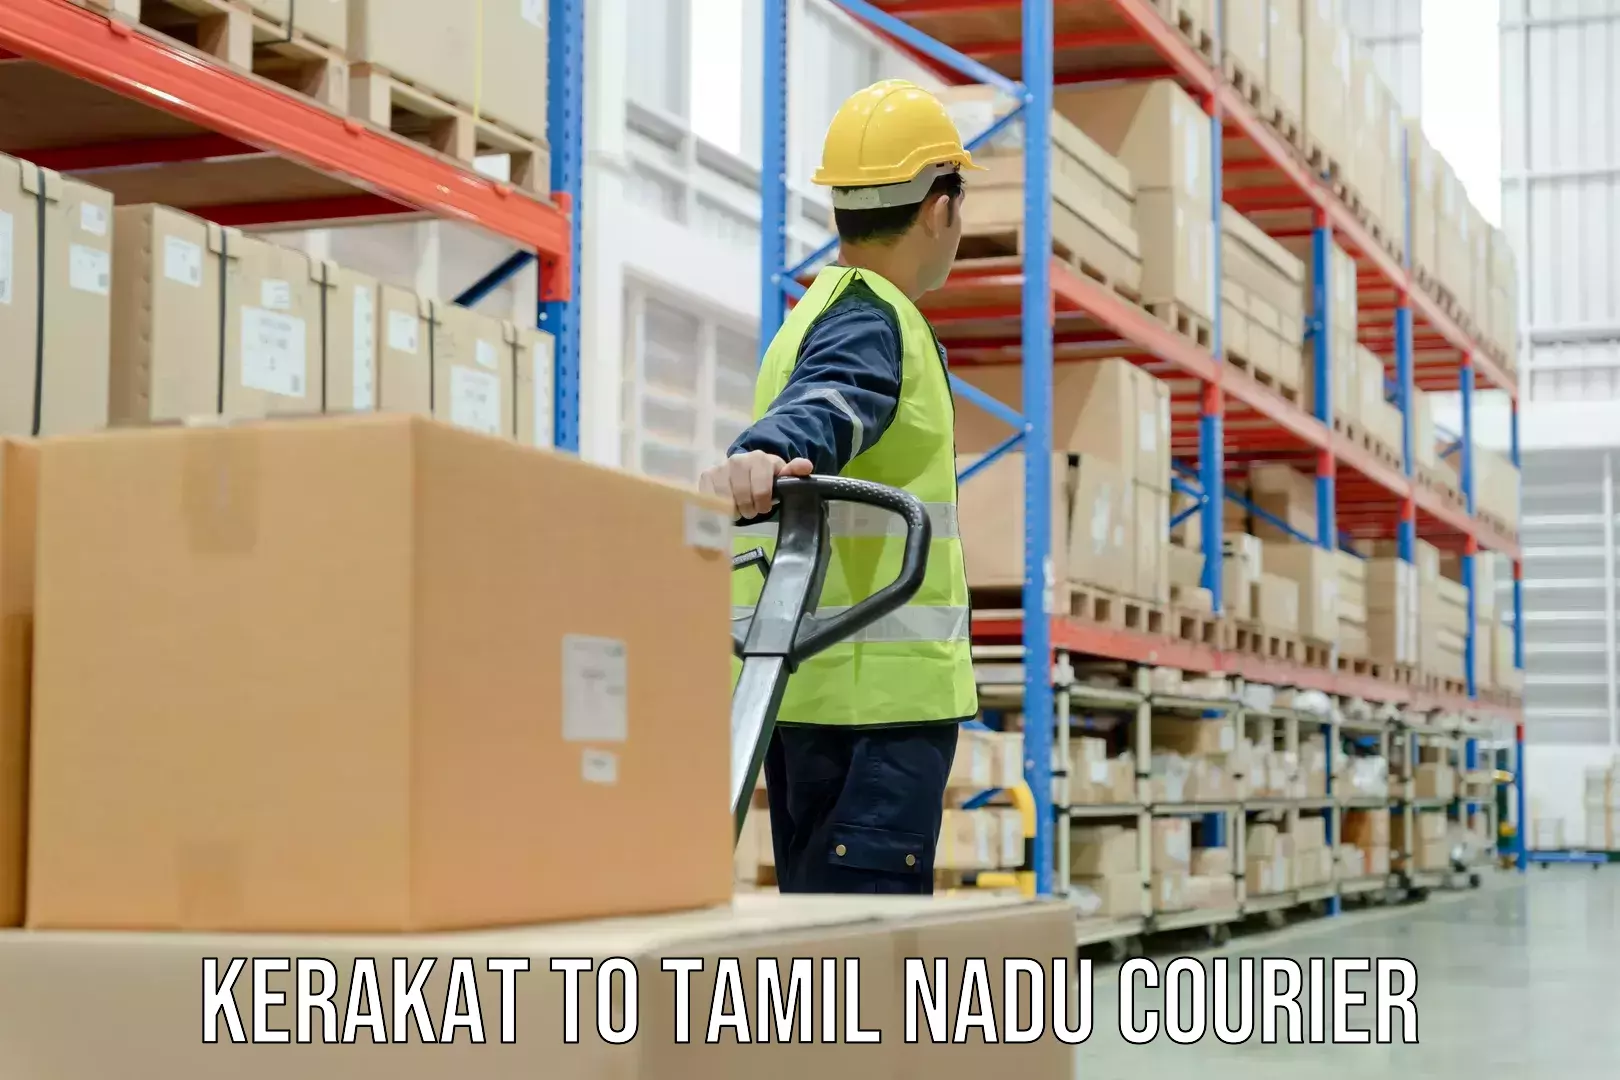 Custom courier packaging Kerakat to Tamil Nadu